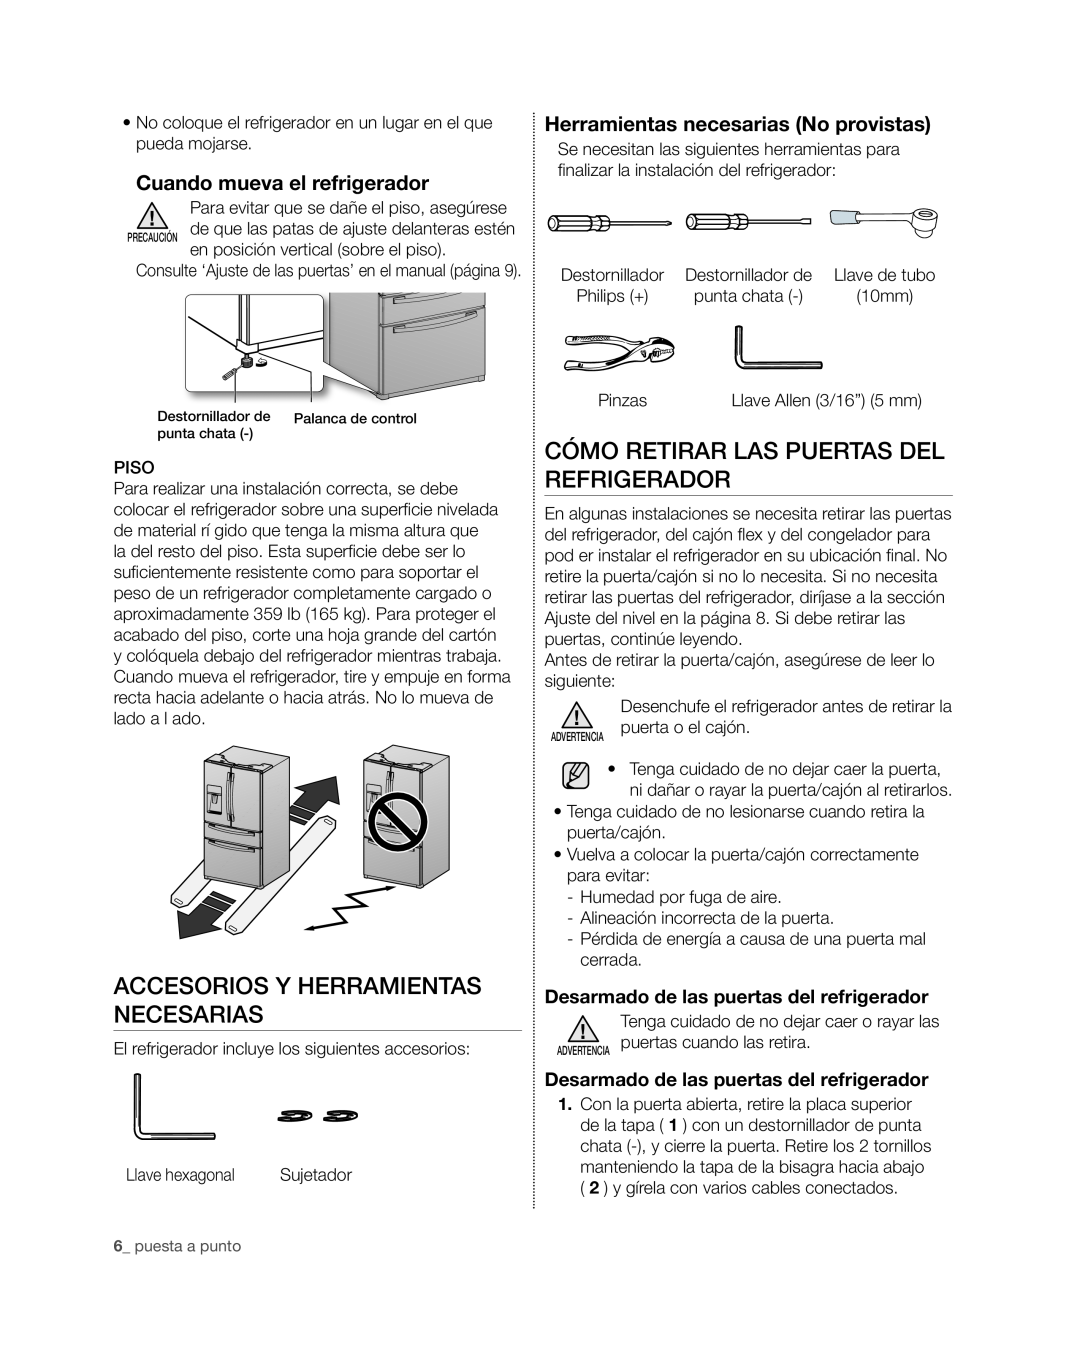 Samsung RF4267HA user manual Accesorios y herramientas necesarias, Cómo retirar las puertas del refrigerador 